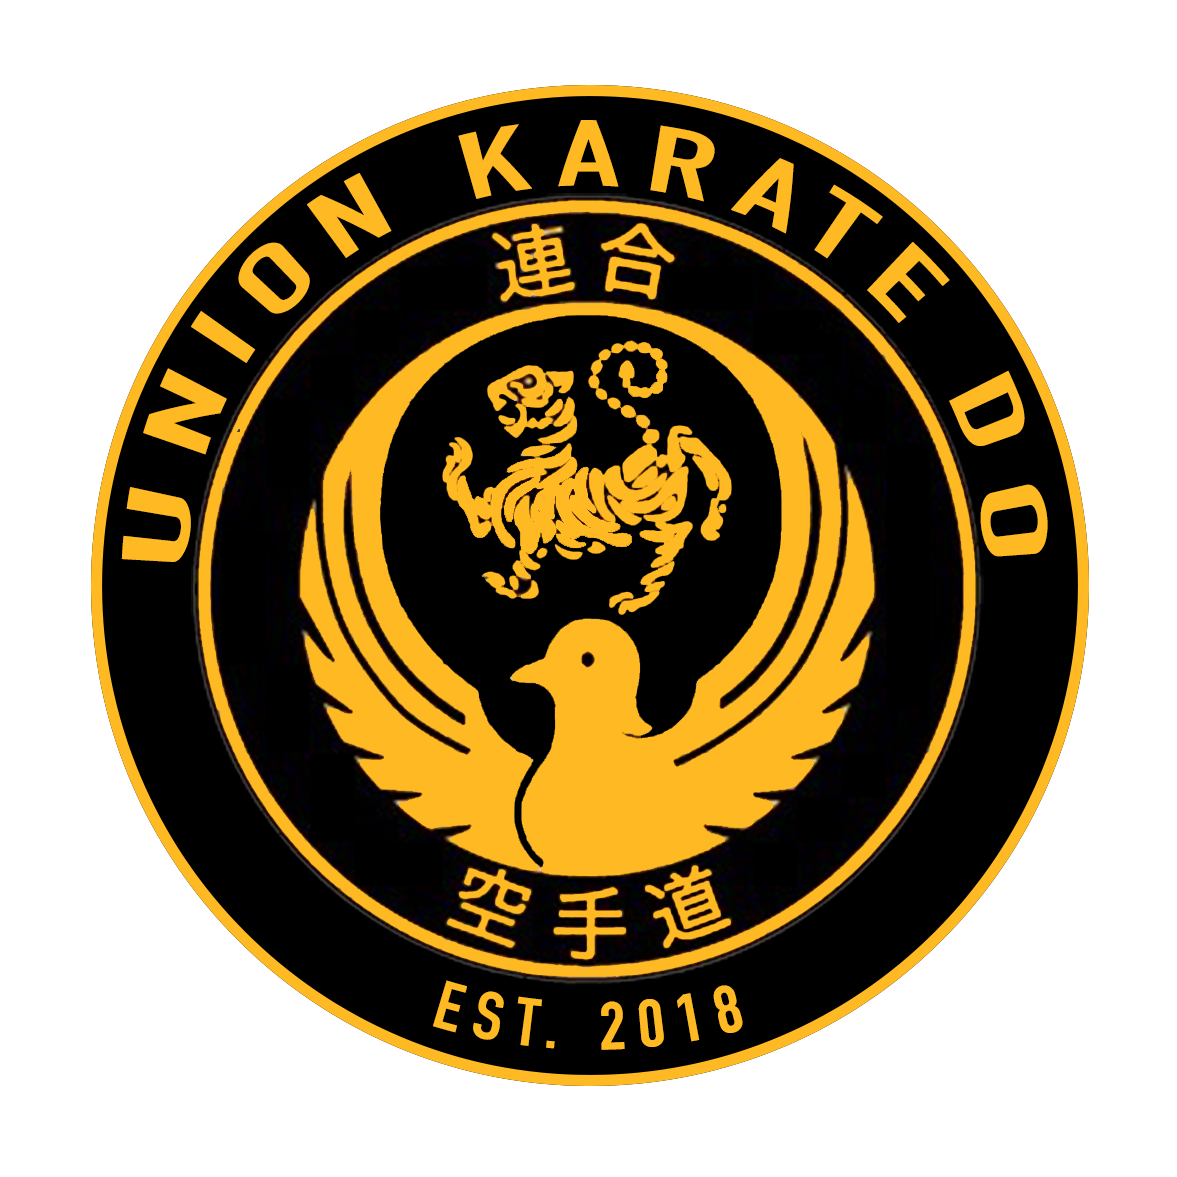 Union Karate Do